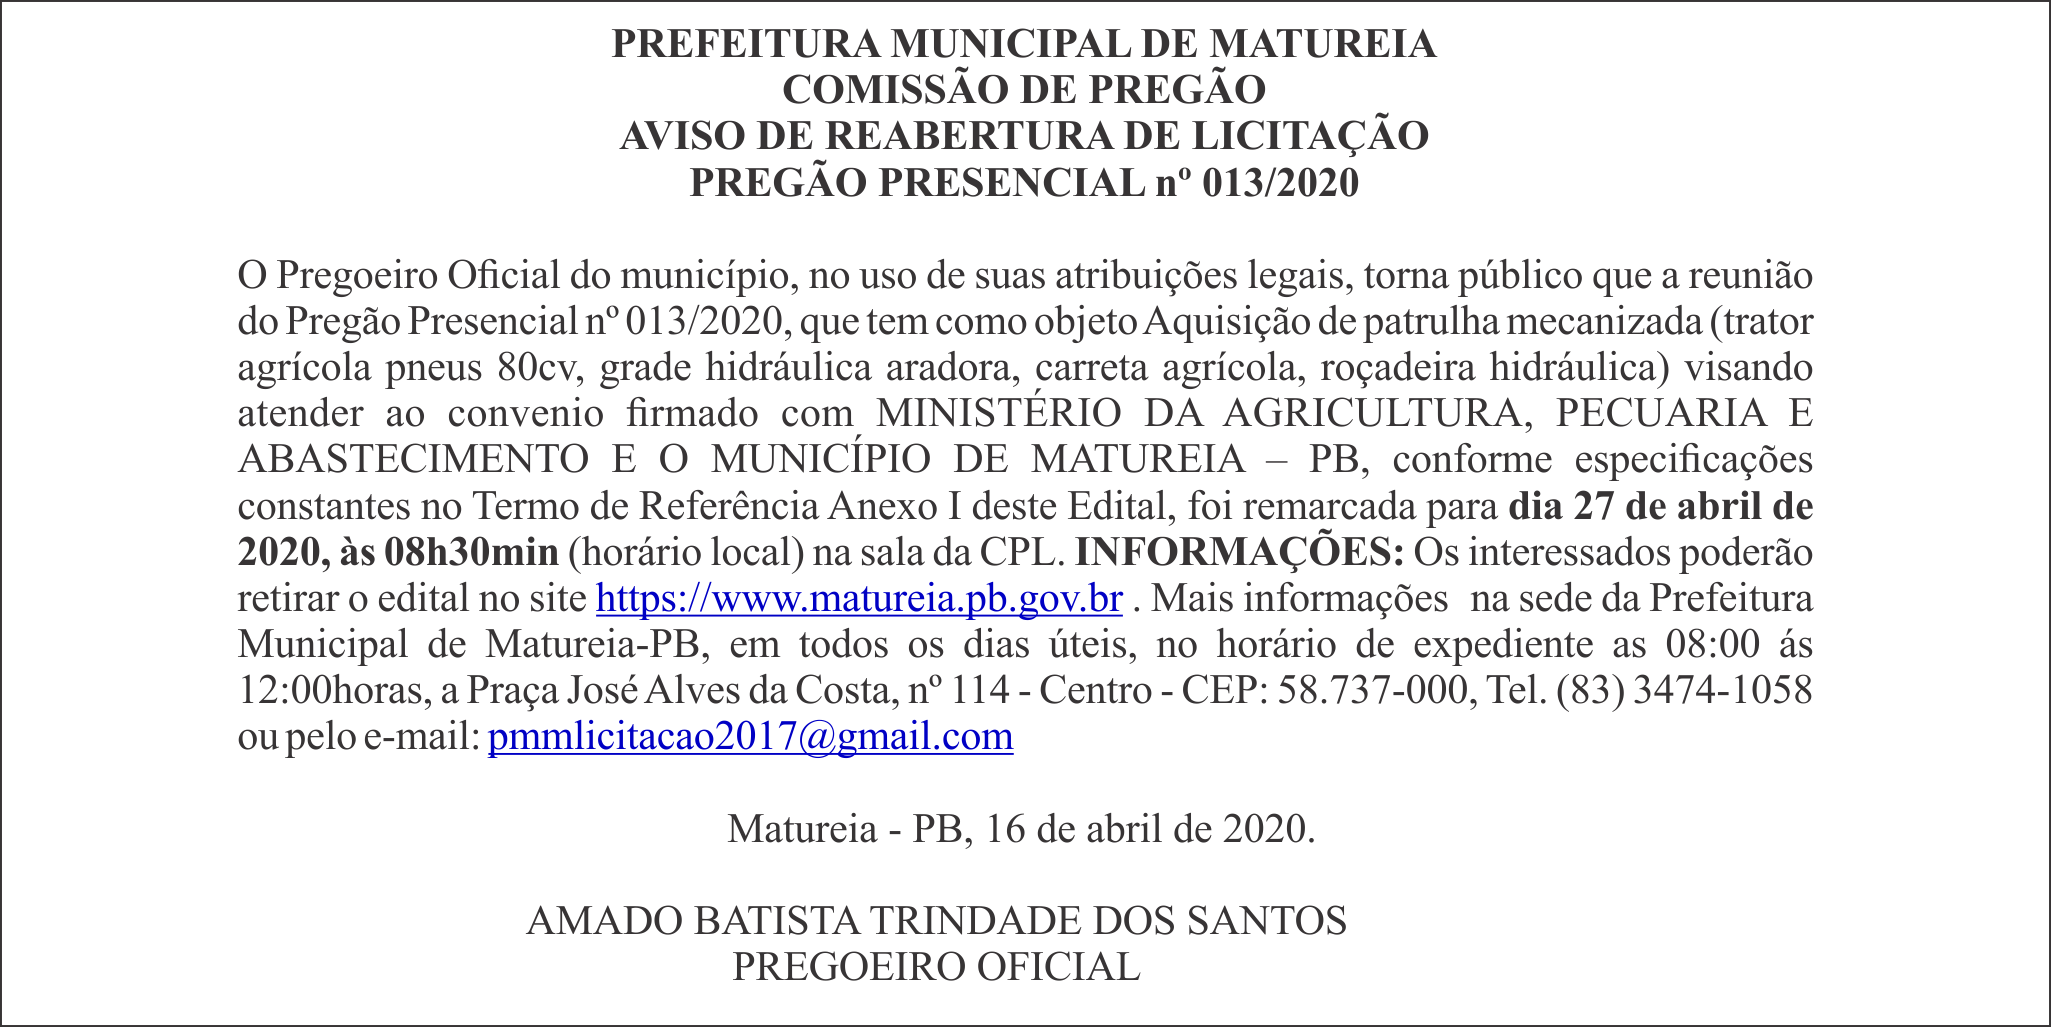 PREFEITURA MUNICIPAL DE MATUREIA – AVISO DE REABERTURA DE LICITAÇÃO – PREGÃO PRESENCIAL nº 013/2020